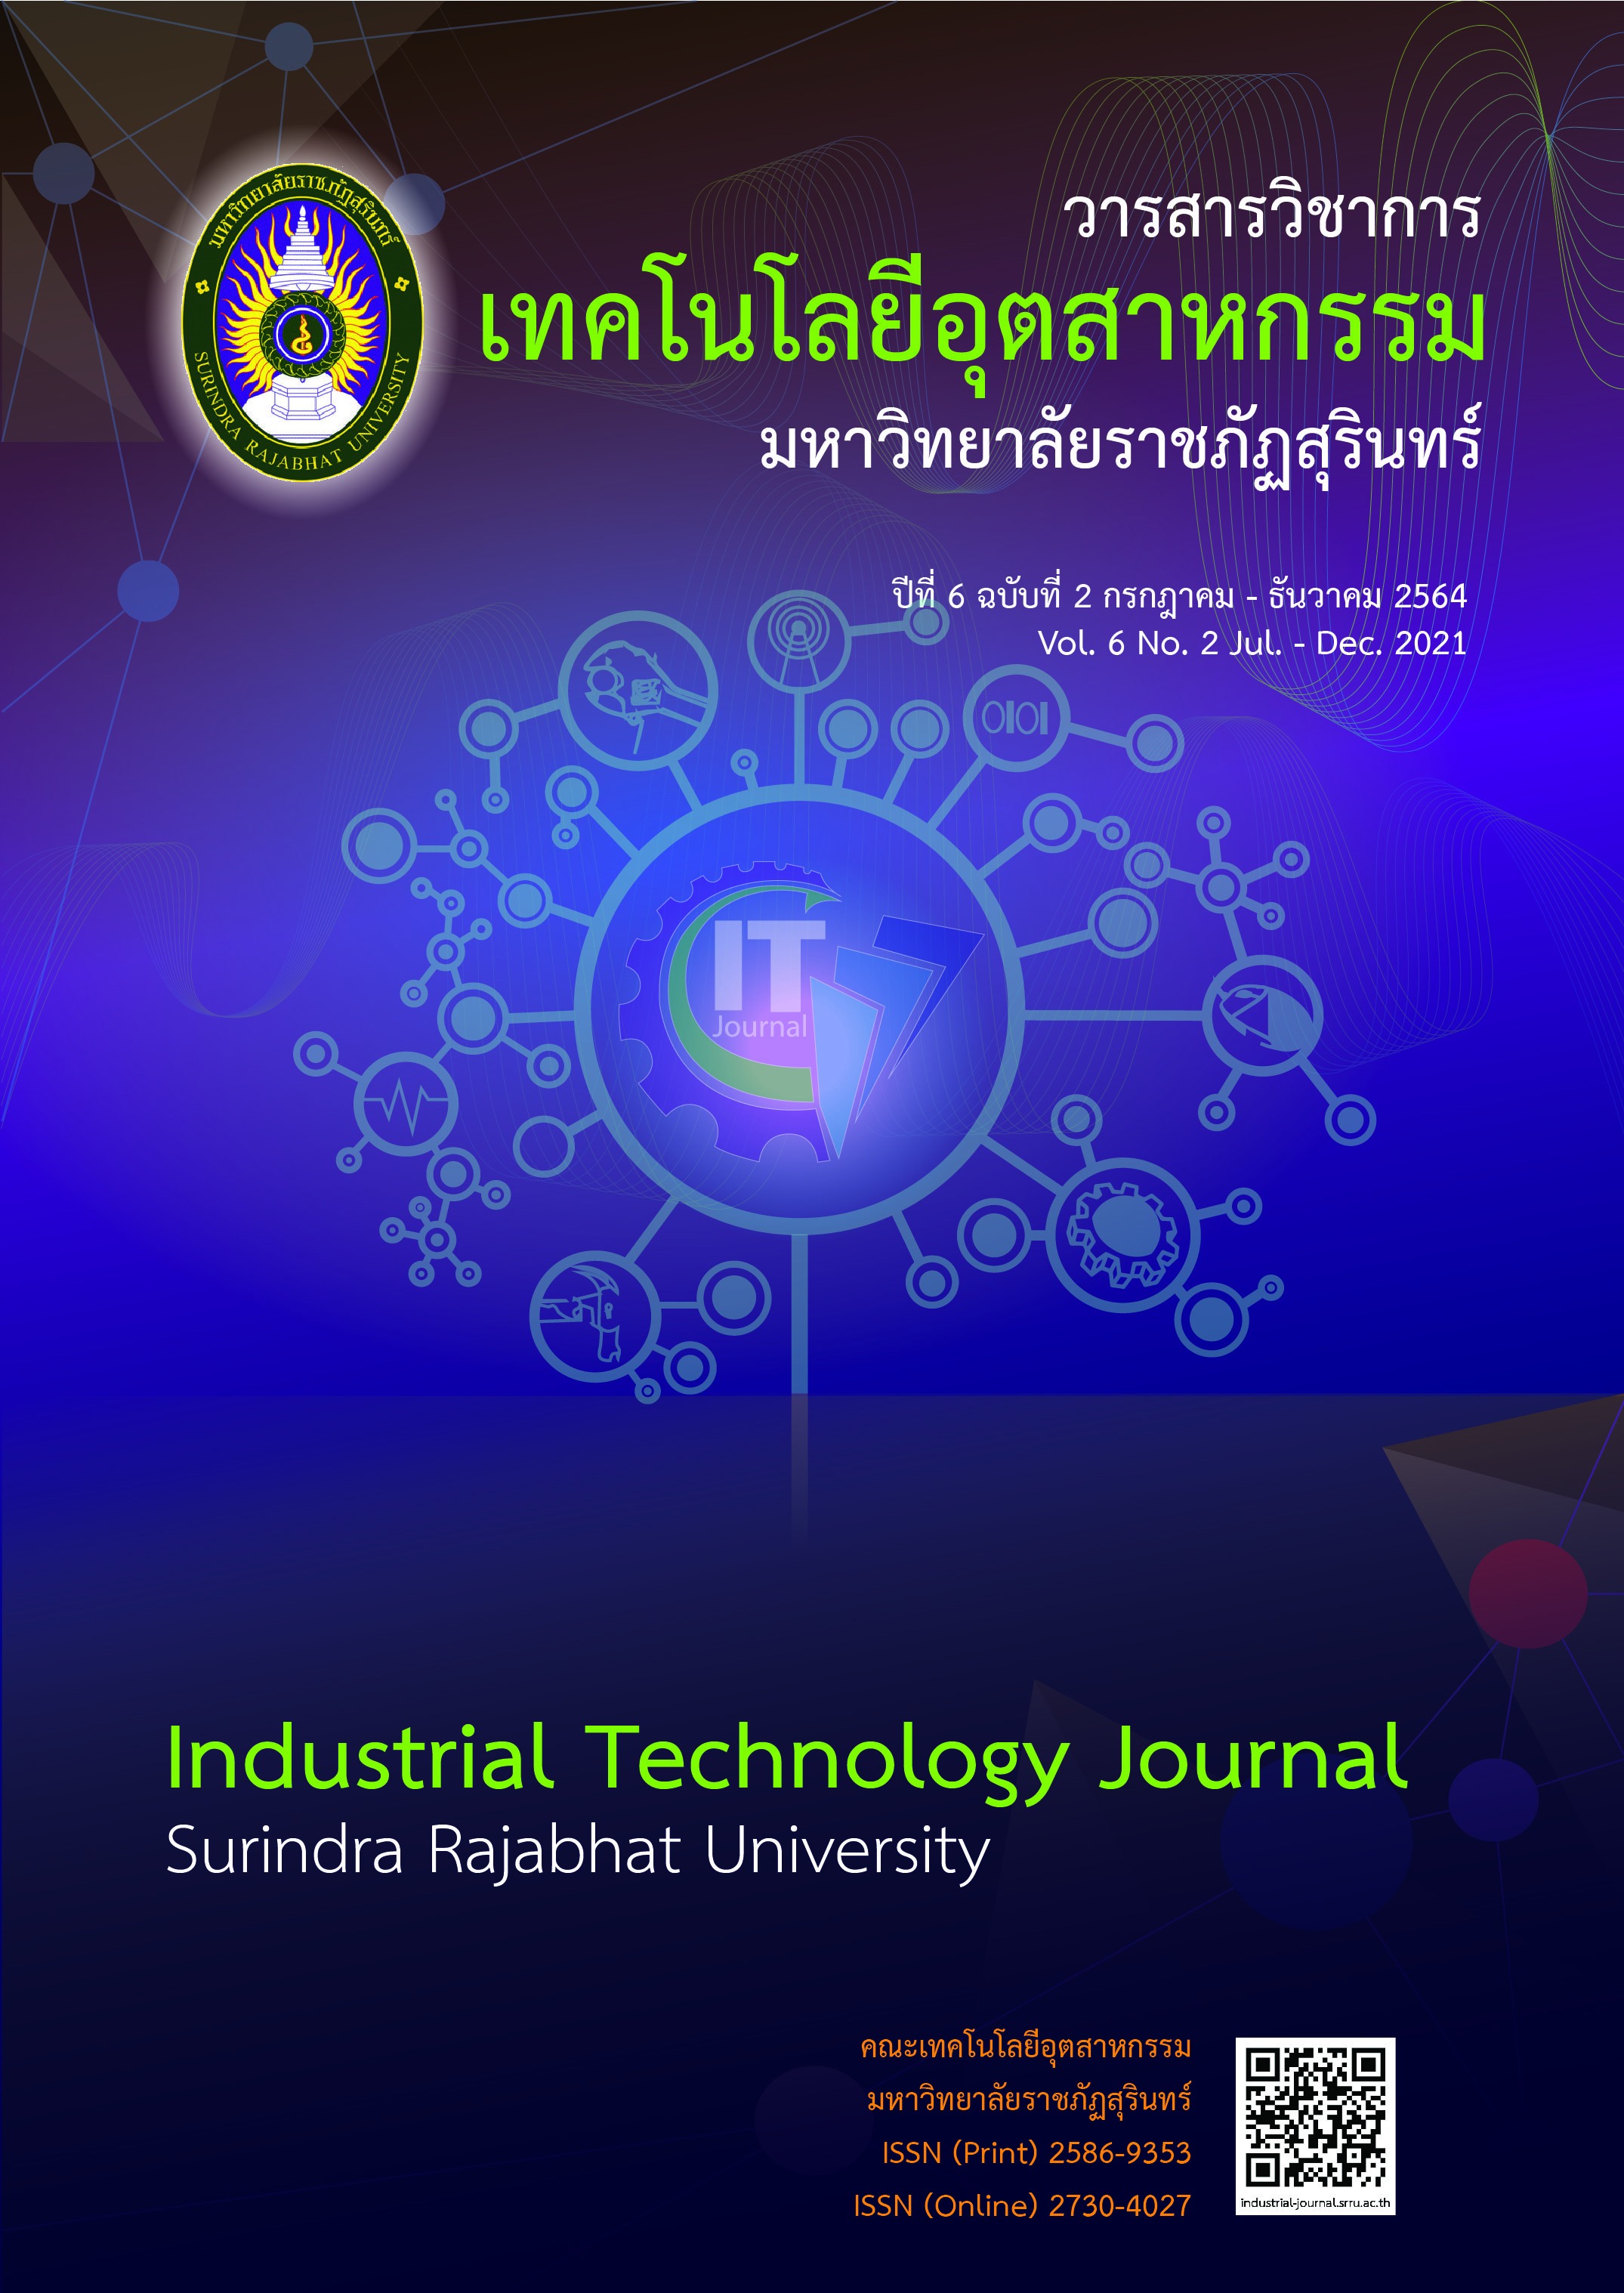 					ดู ปีที่ 6 ฉบับที่ 2 (2021): วารสารวิชาการ เทคโนโลยีอุตสาหกรรม  ปีที่ 6 ฉบับที่ 2 กรกฎาคม - ธันวาคม 2564
				